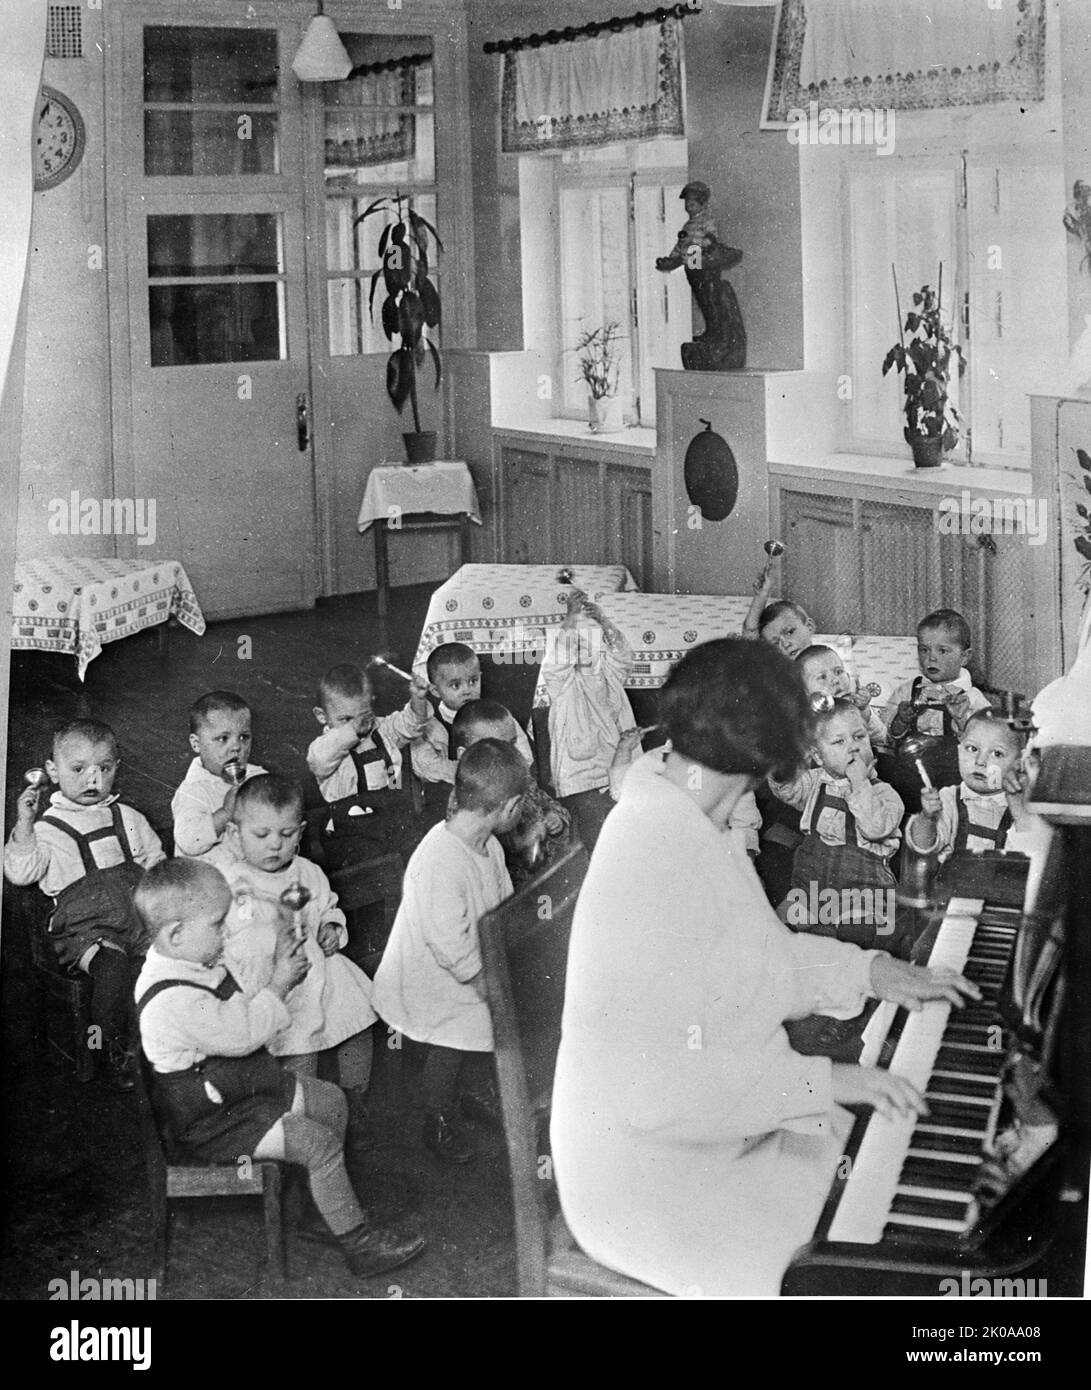 Les enfants des écoles maternelles ont de la musique et des rythmes en URSS (Union des Républiques socialistes soviétiques). c1930-1940. Photographie en noir et blanc Banque D'Images